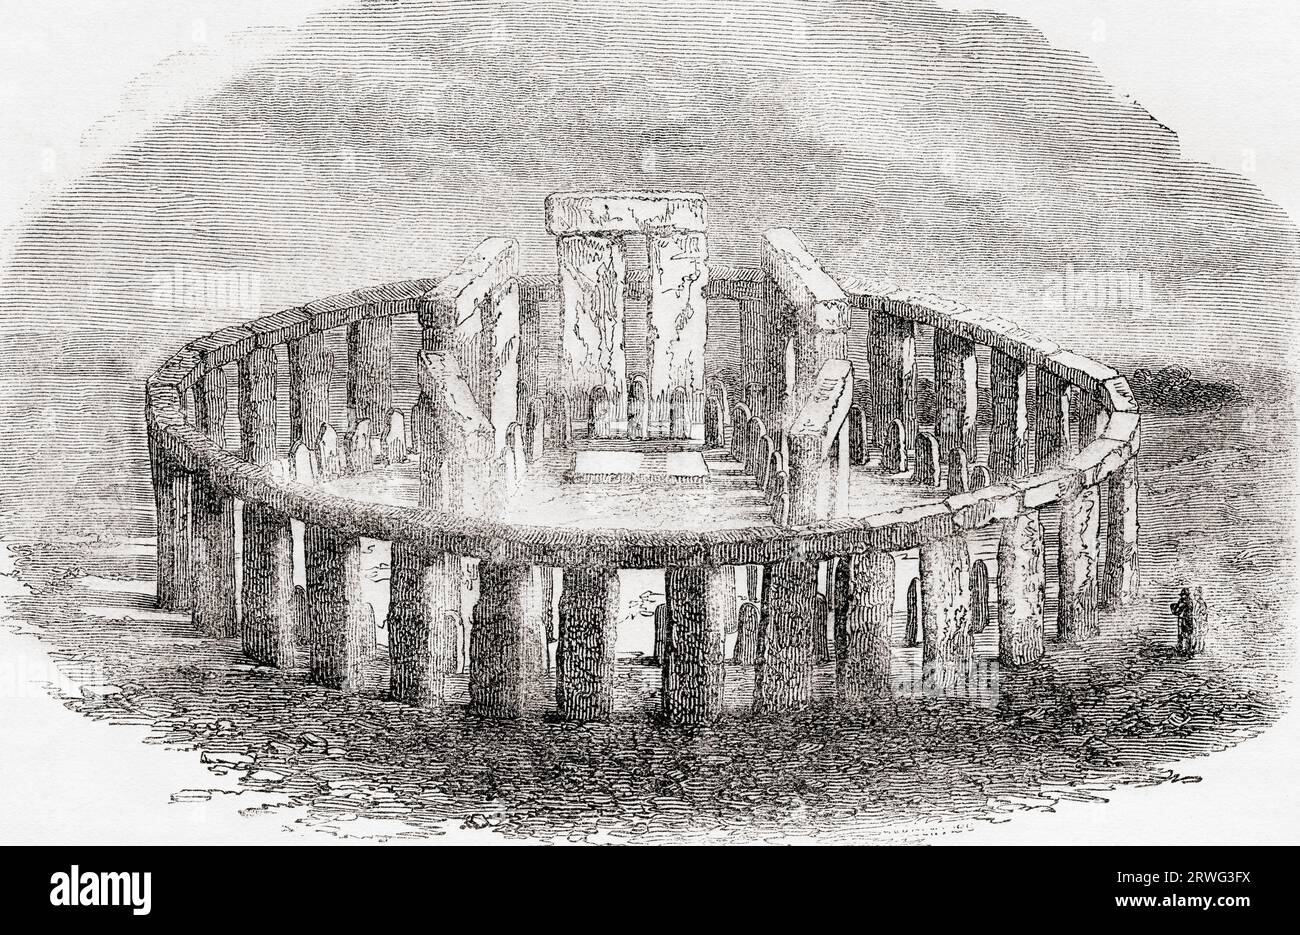 Reconstruction imaginaire de Stonehenge, plaine de Salisbury, Angleterre. Extrait de Cassell's Illustrated History of England, publié en 1857. Banque D'Images